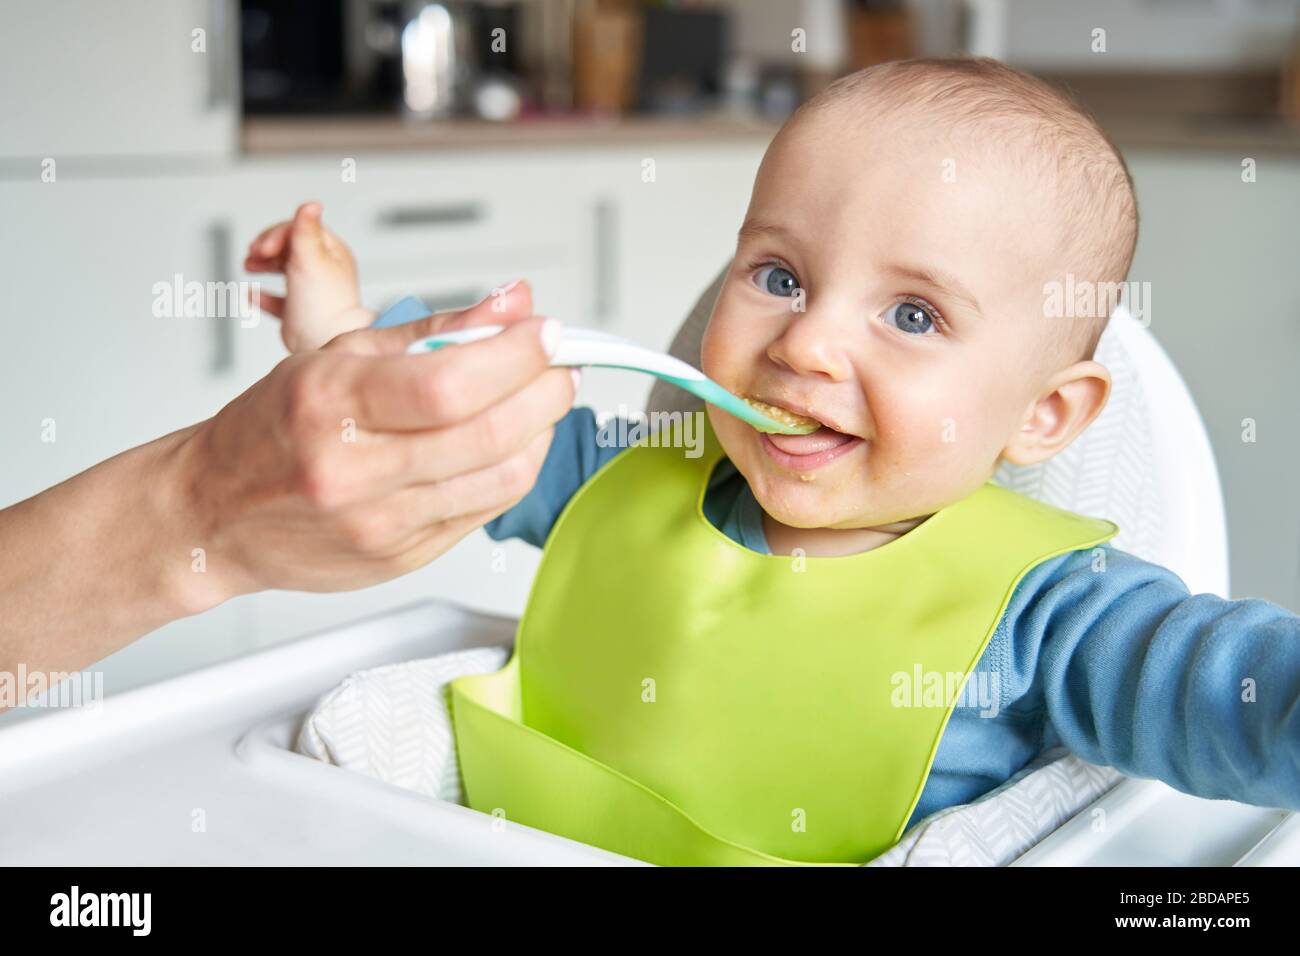 Retrato de Smiling 8 meses de niño viejo en casa en silla alta siendo alimentado de alimentos sólidos por la madre con cuchara Foto de stock